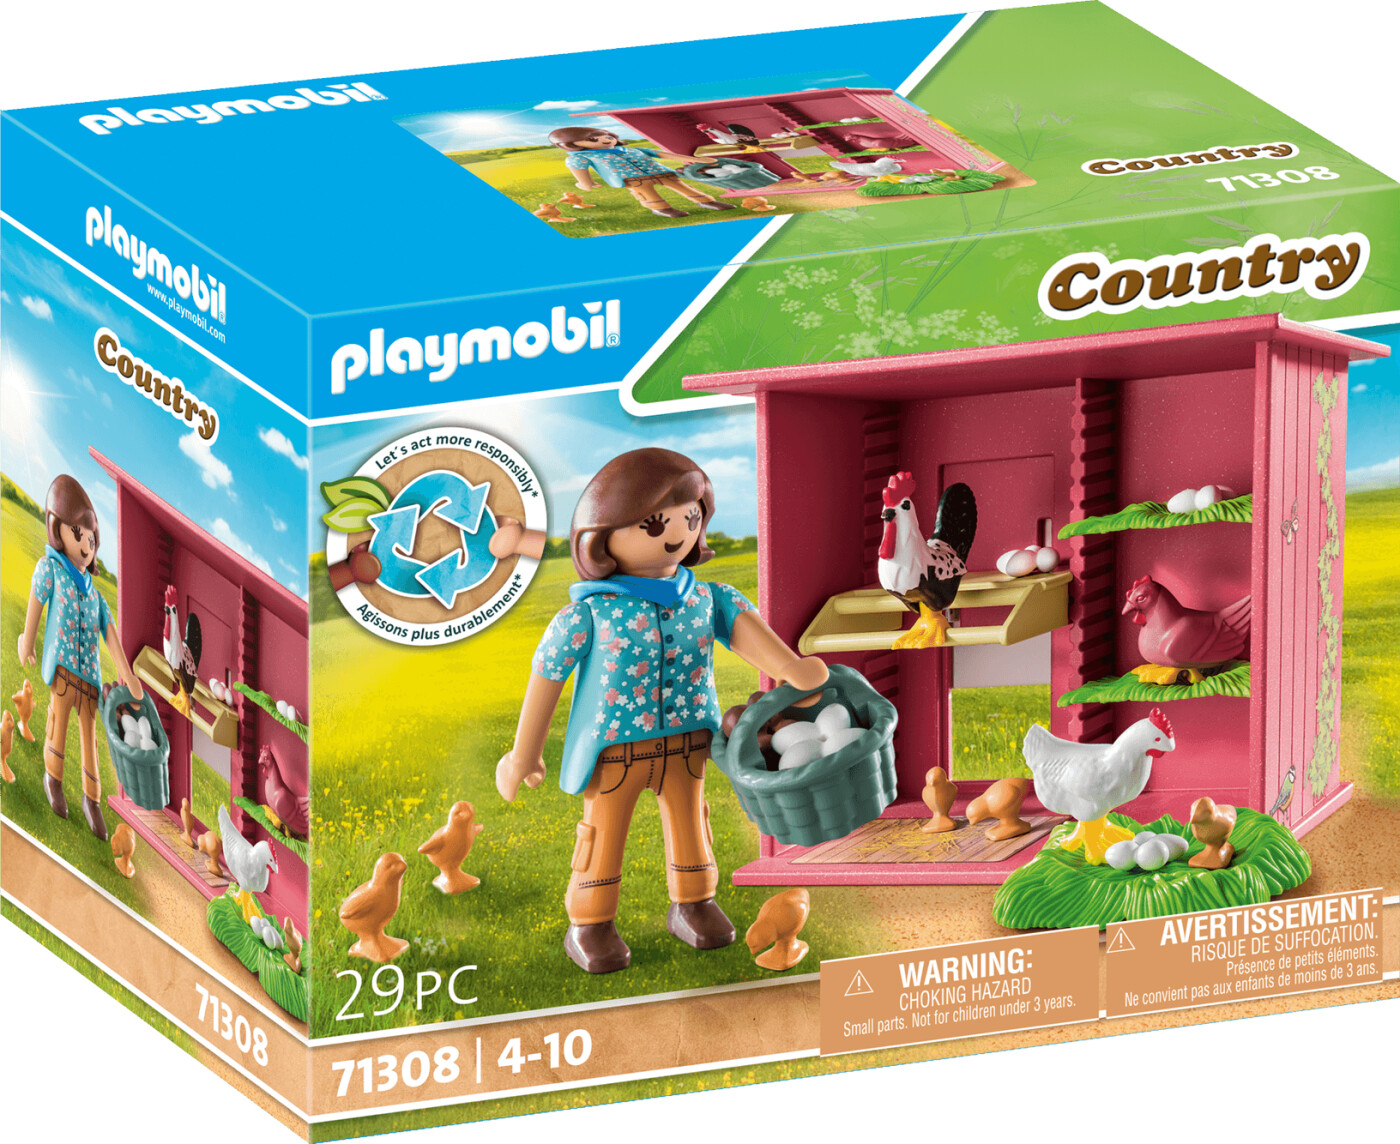 Billede af Playmobil Country - Høne Med Kyllinger - 71308 hos Gucca.dk